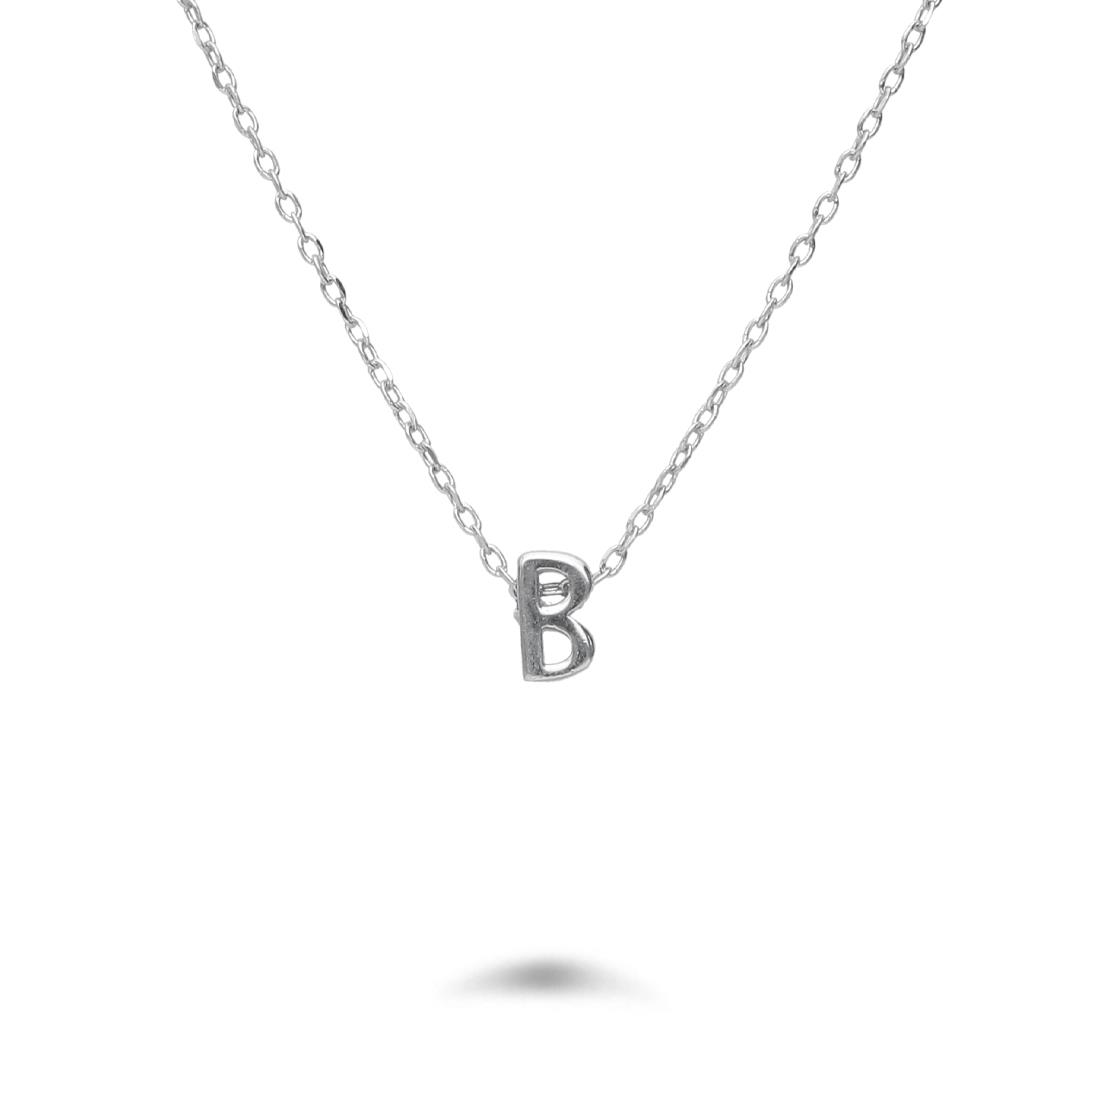 Rolò necklace in rhodium-plated silver with letter B - DESIDERI PREZIOSI